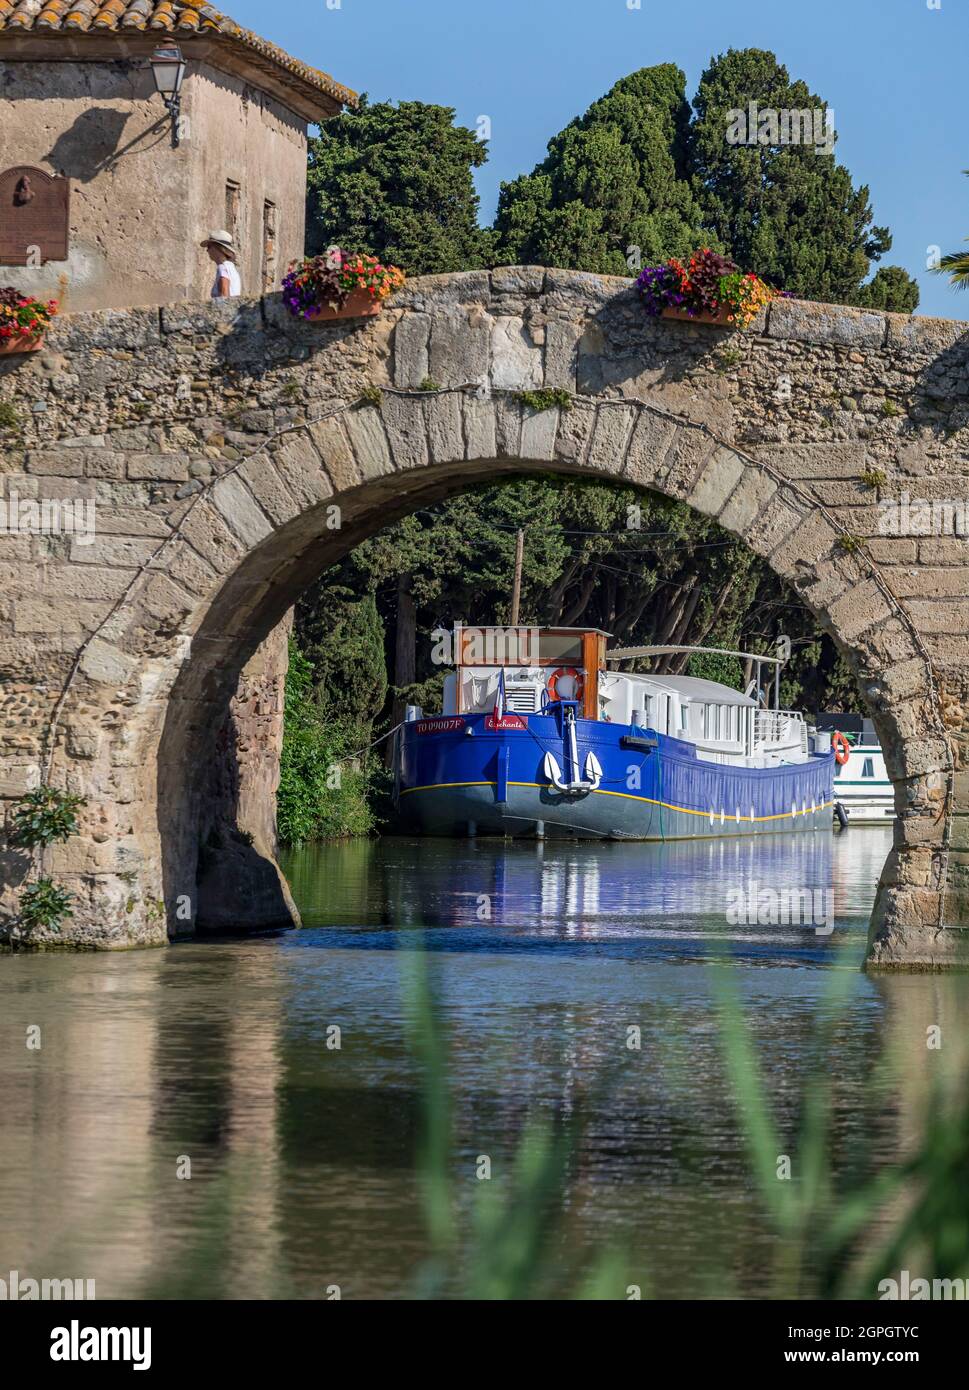 Frankreich, Aude, Ginestas, Le Somail, der Canal du Midi, der von der UNESCO zum Weltkulturerbe erklärt wurde Stockfoto